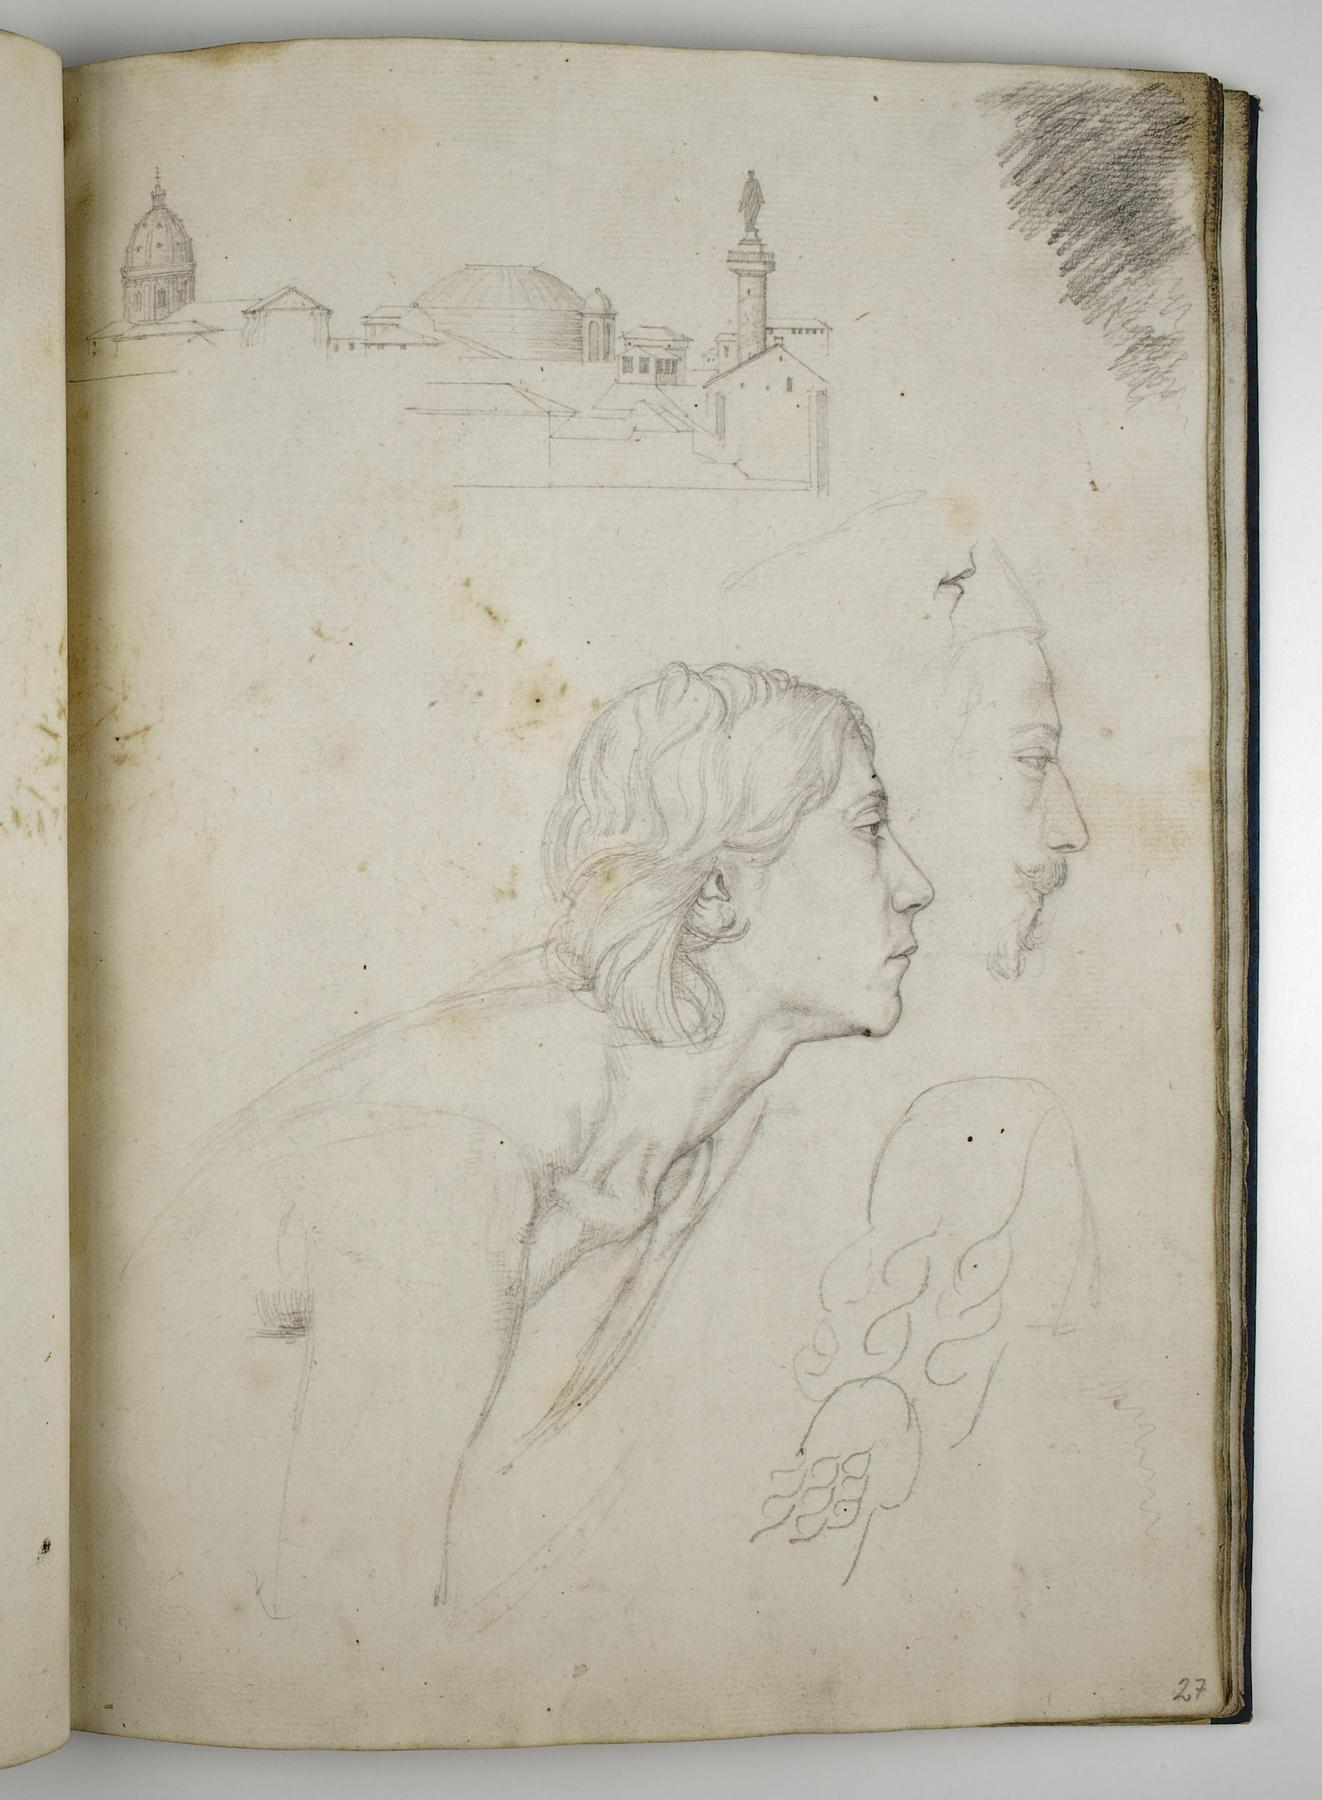 Prospekt af Rom. Ung mandlig model. Hoved af mand i profil, D1588,27